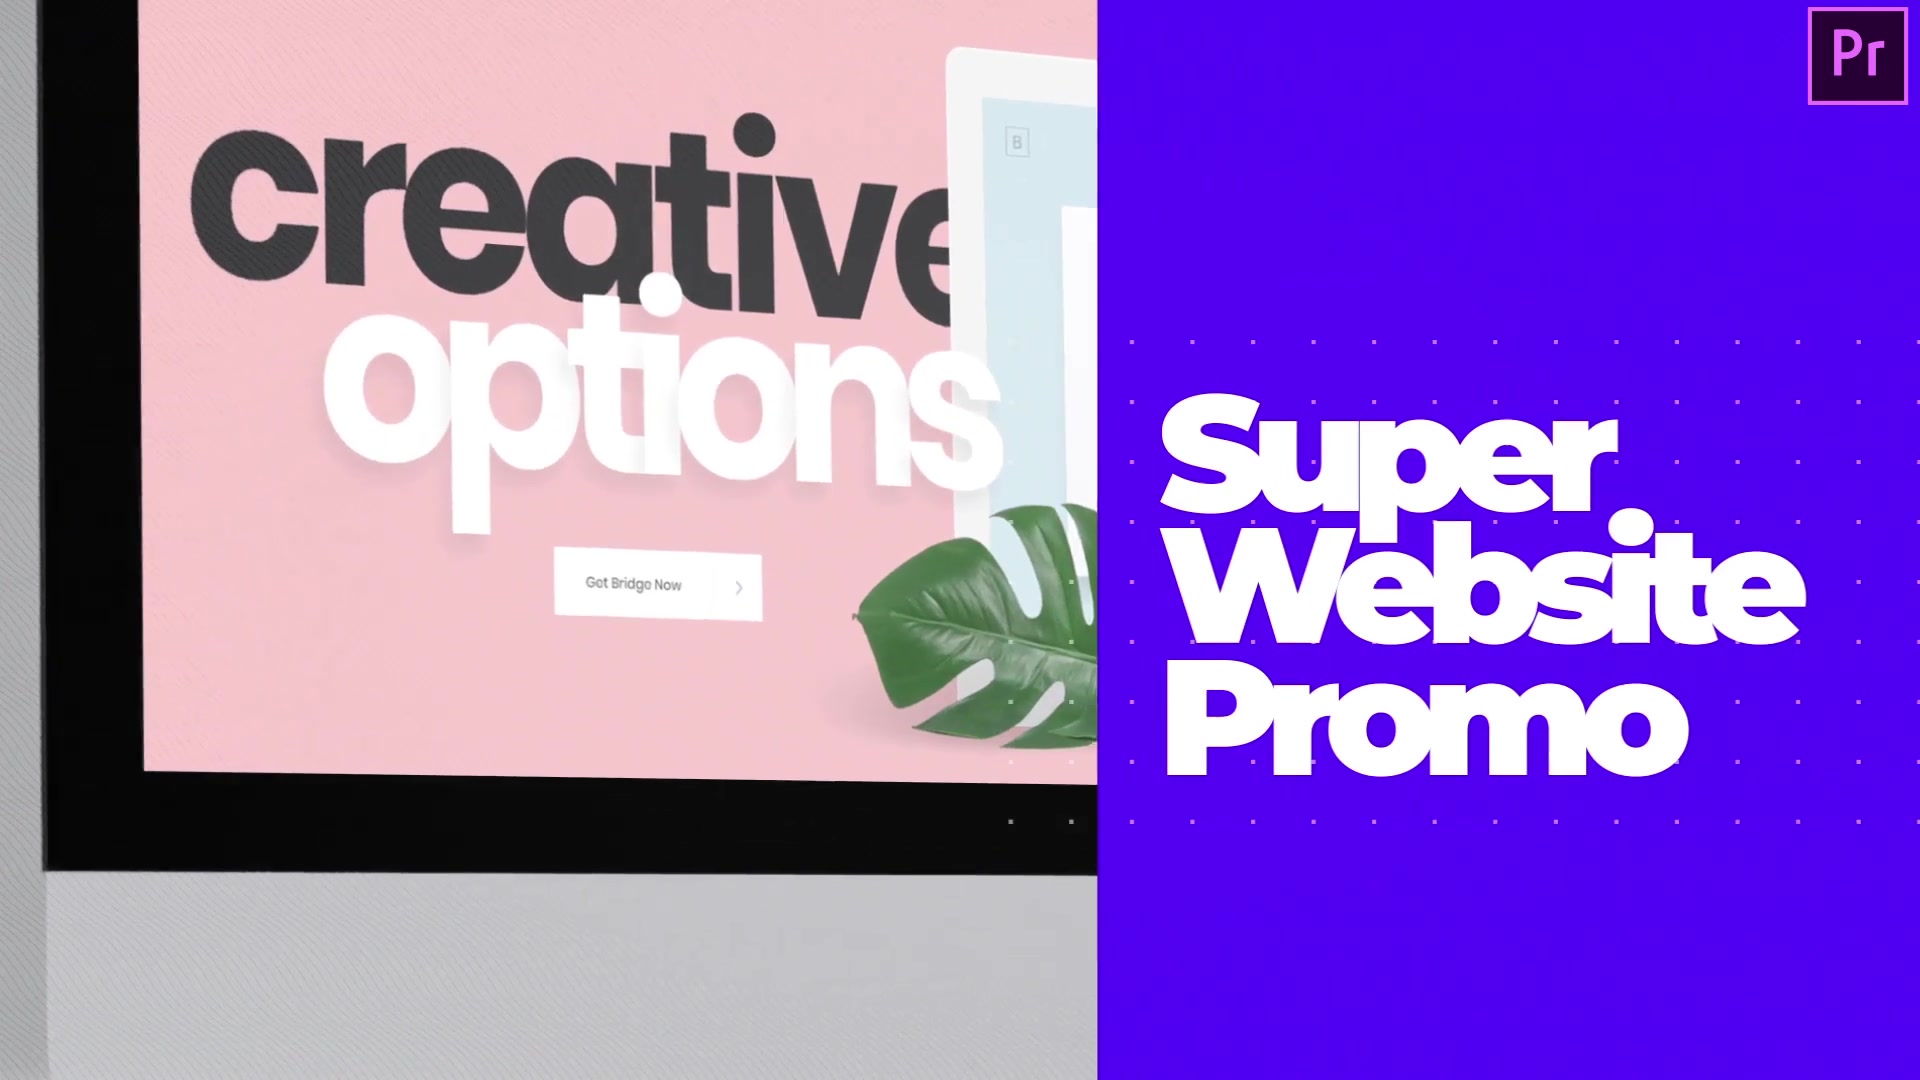 Super Website Promo Web Showcase Video Premiere Pro Videohive 34396861 Premiere Pro Image 11